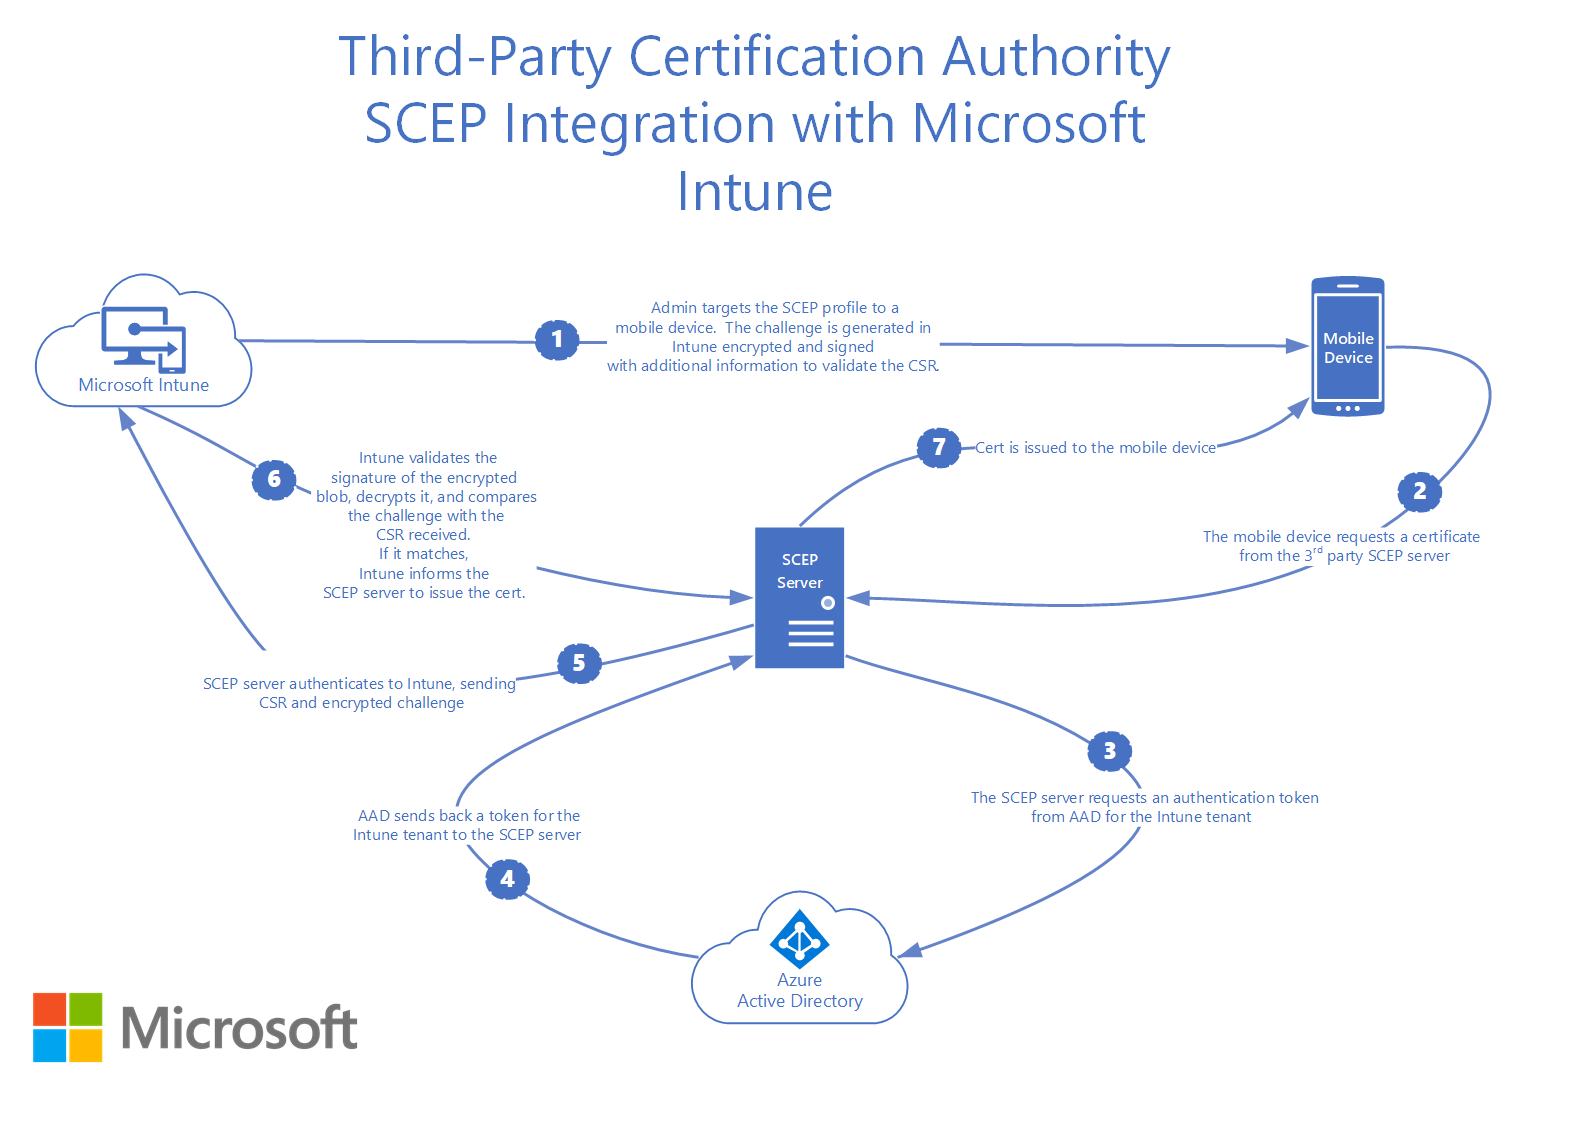 Comment l’autorité de certification tierce SCEP s’intègre à Microsoft Intune